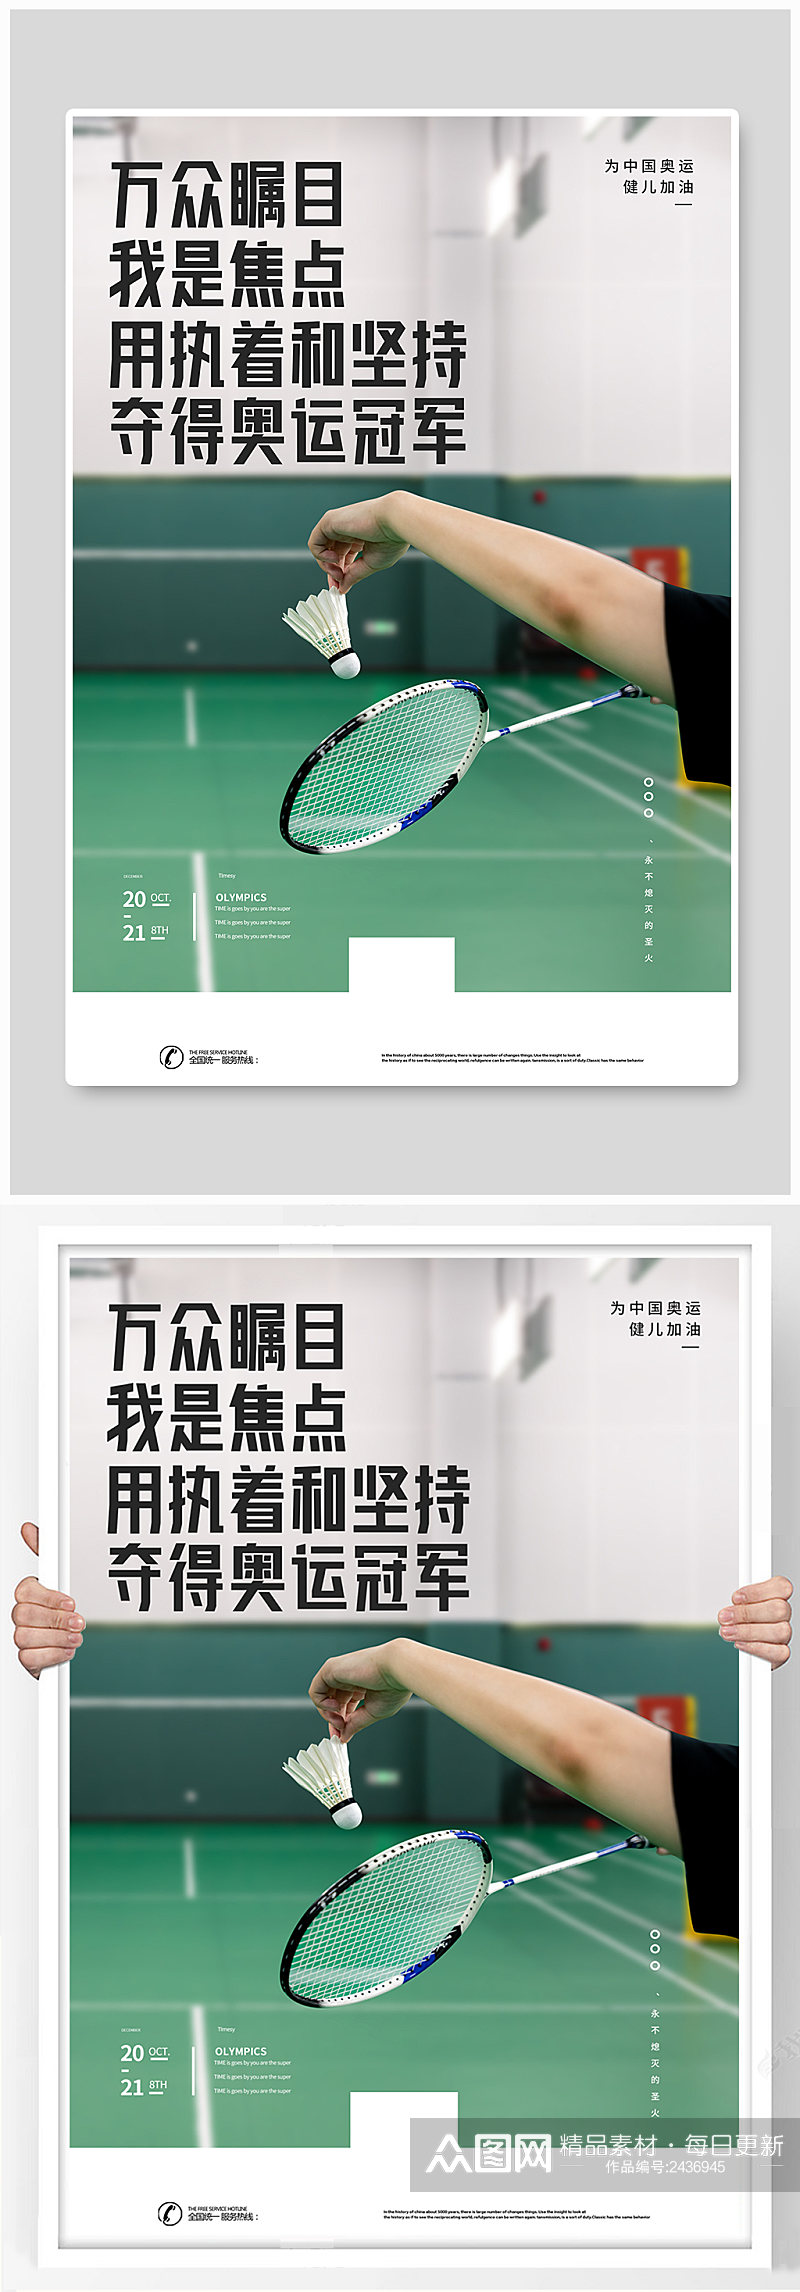 东京奥运会宣传海报素材